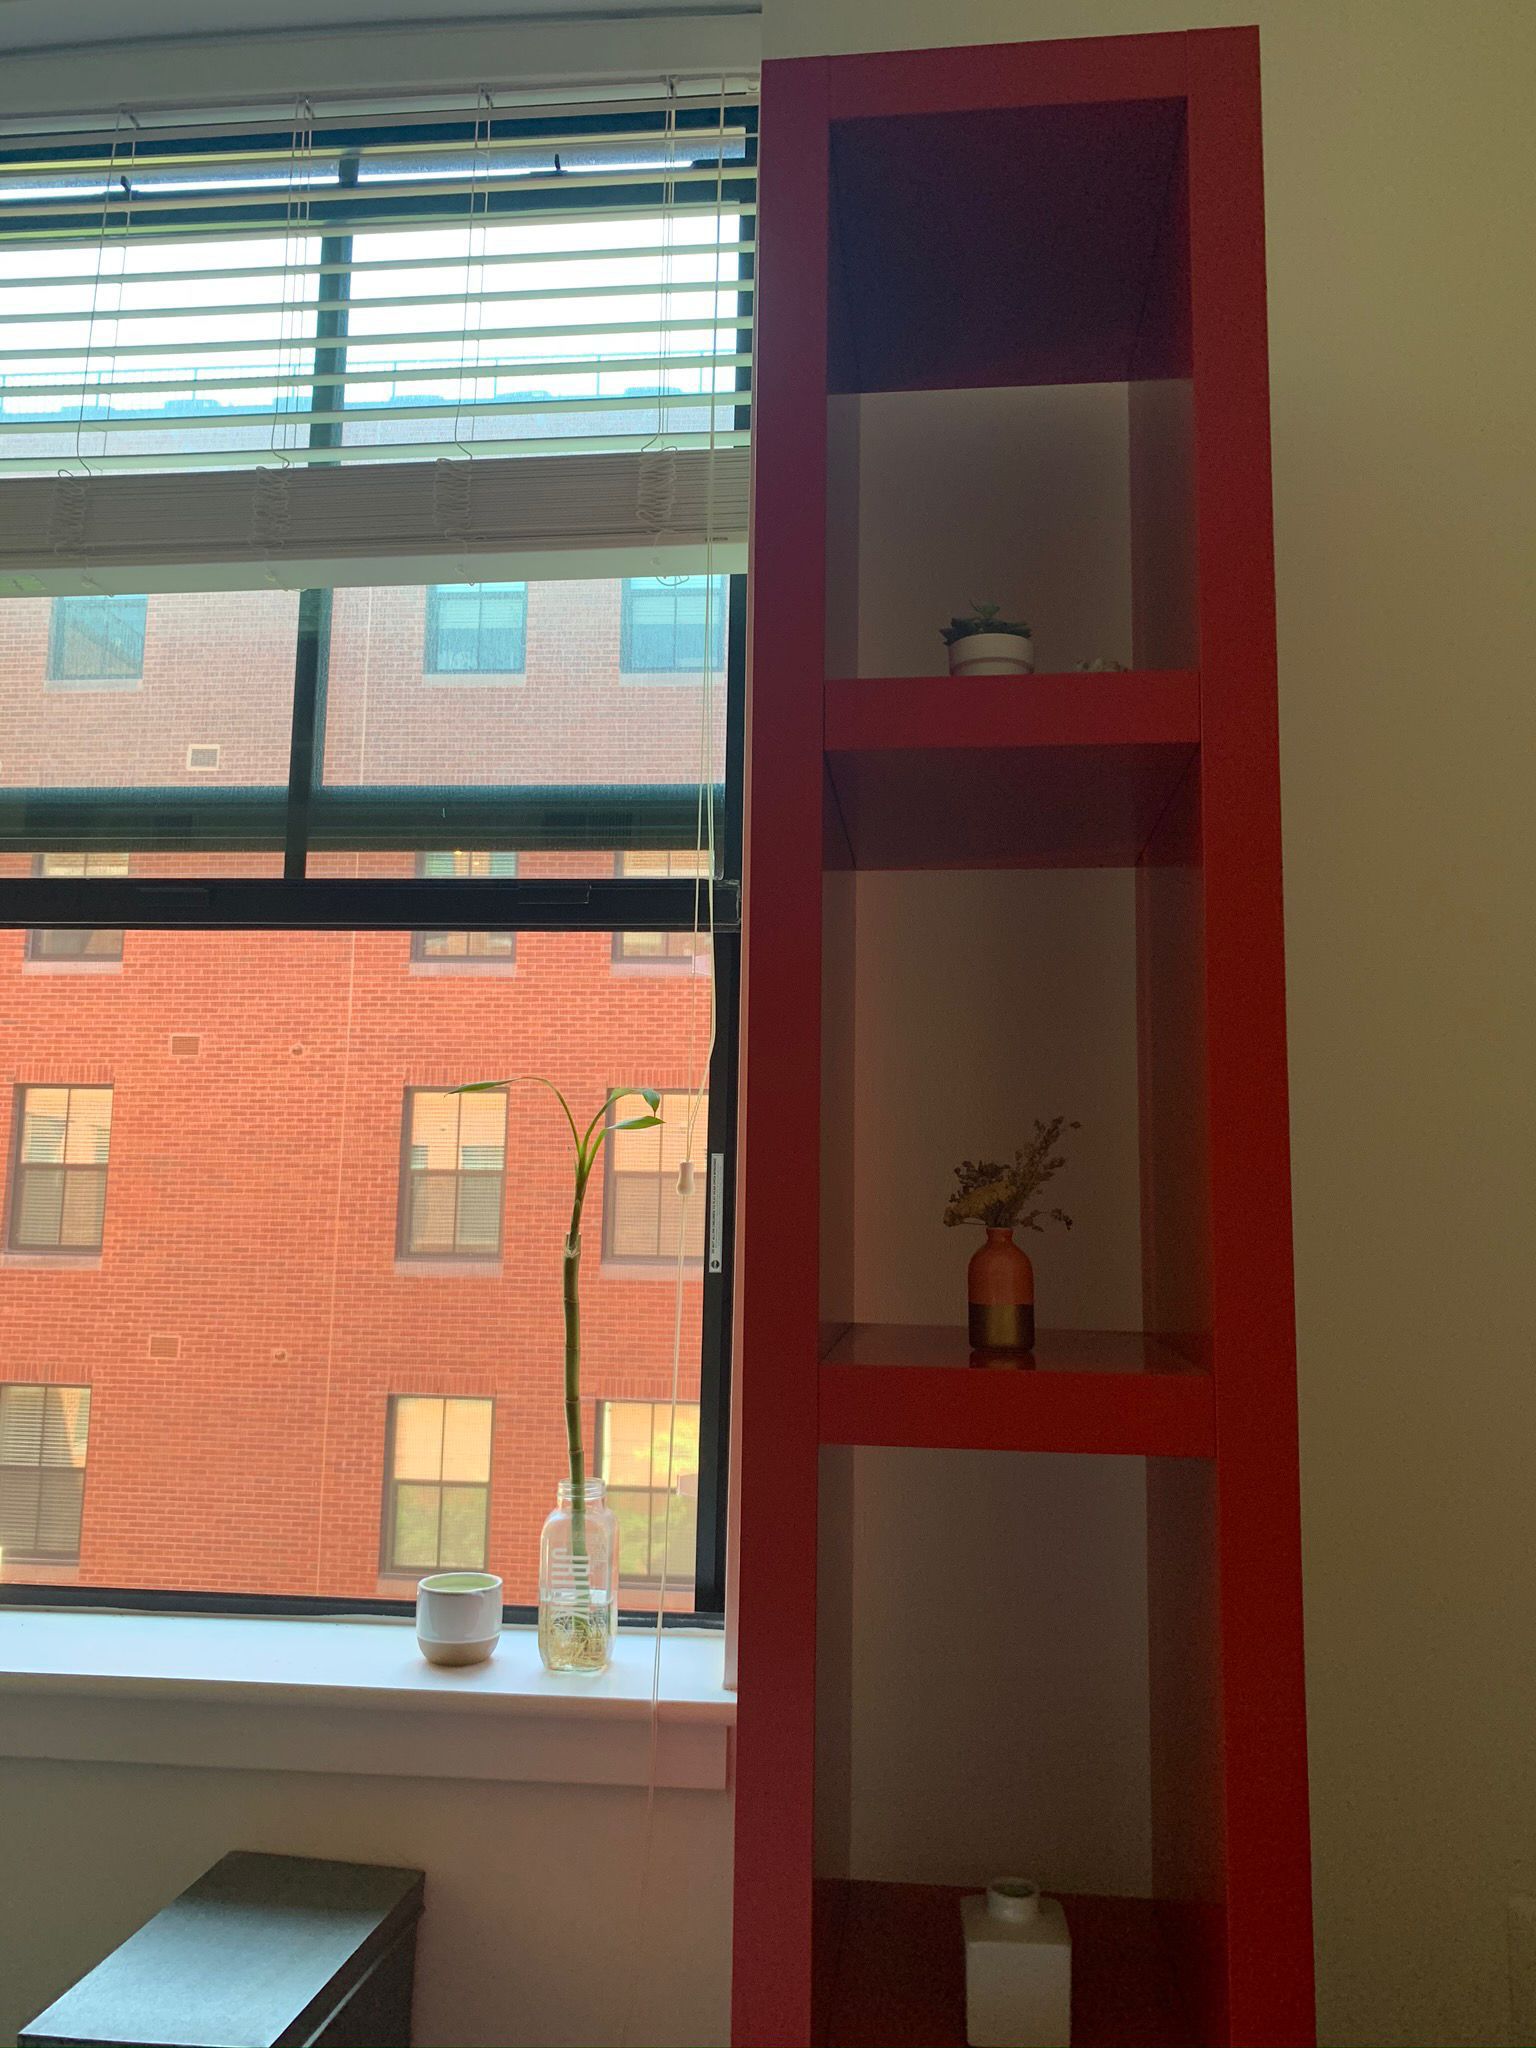 Two Ikea red bookshelves 